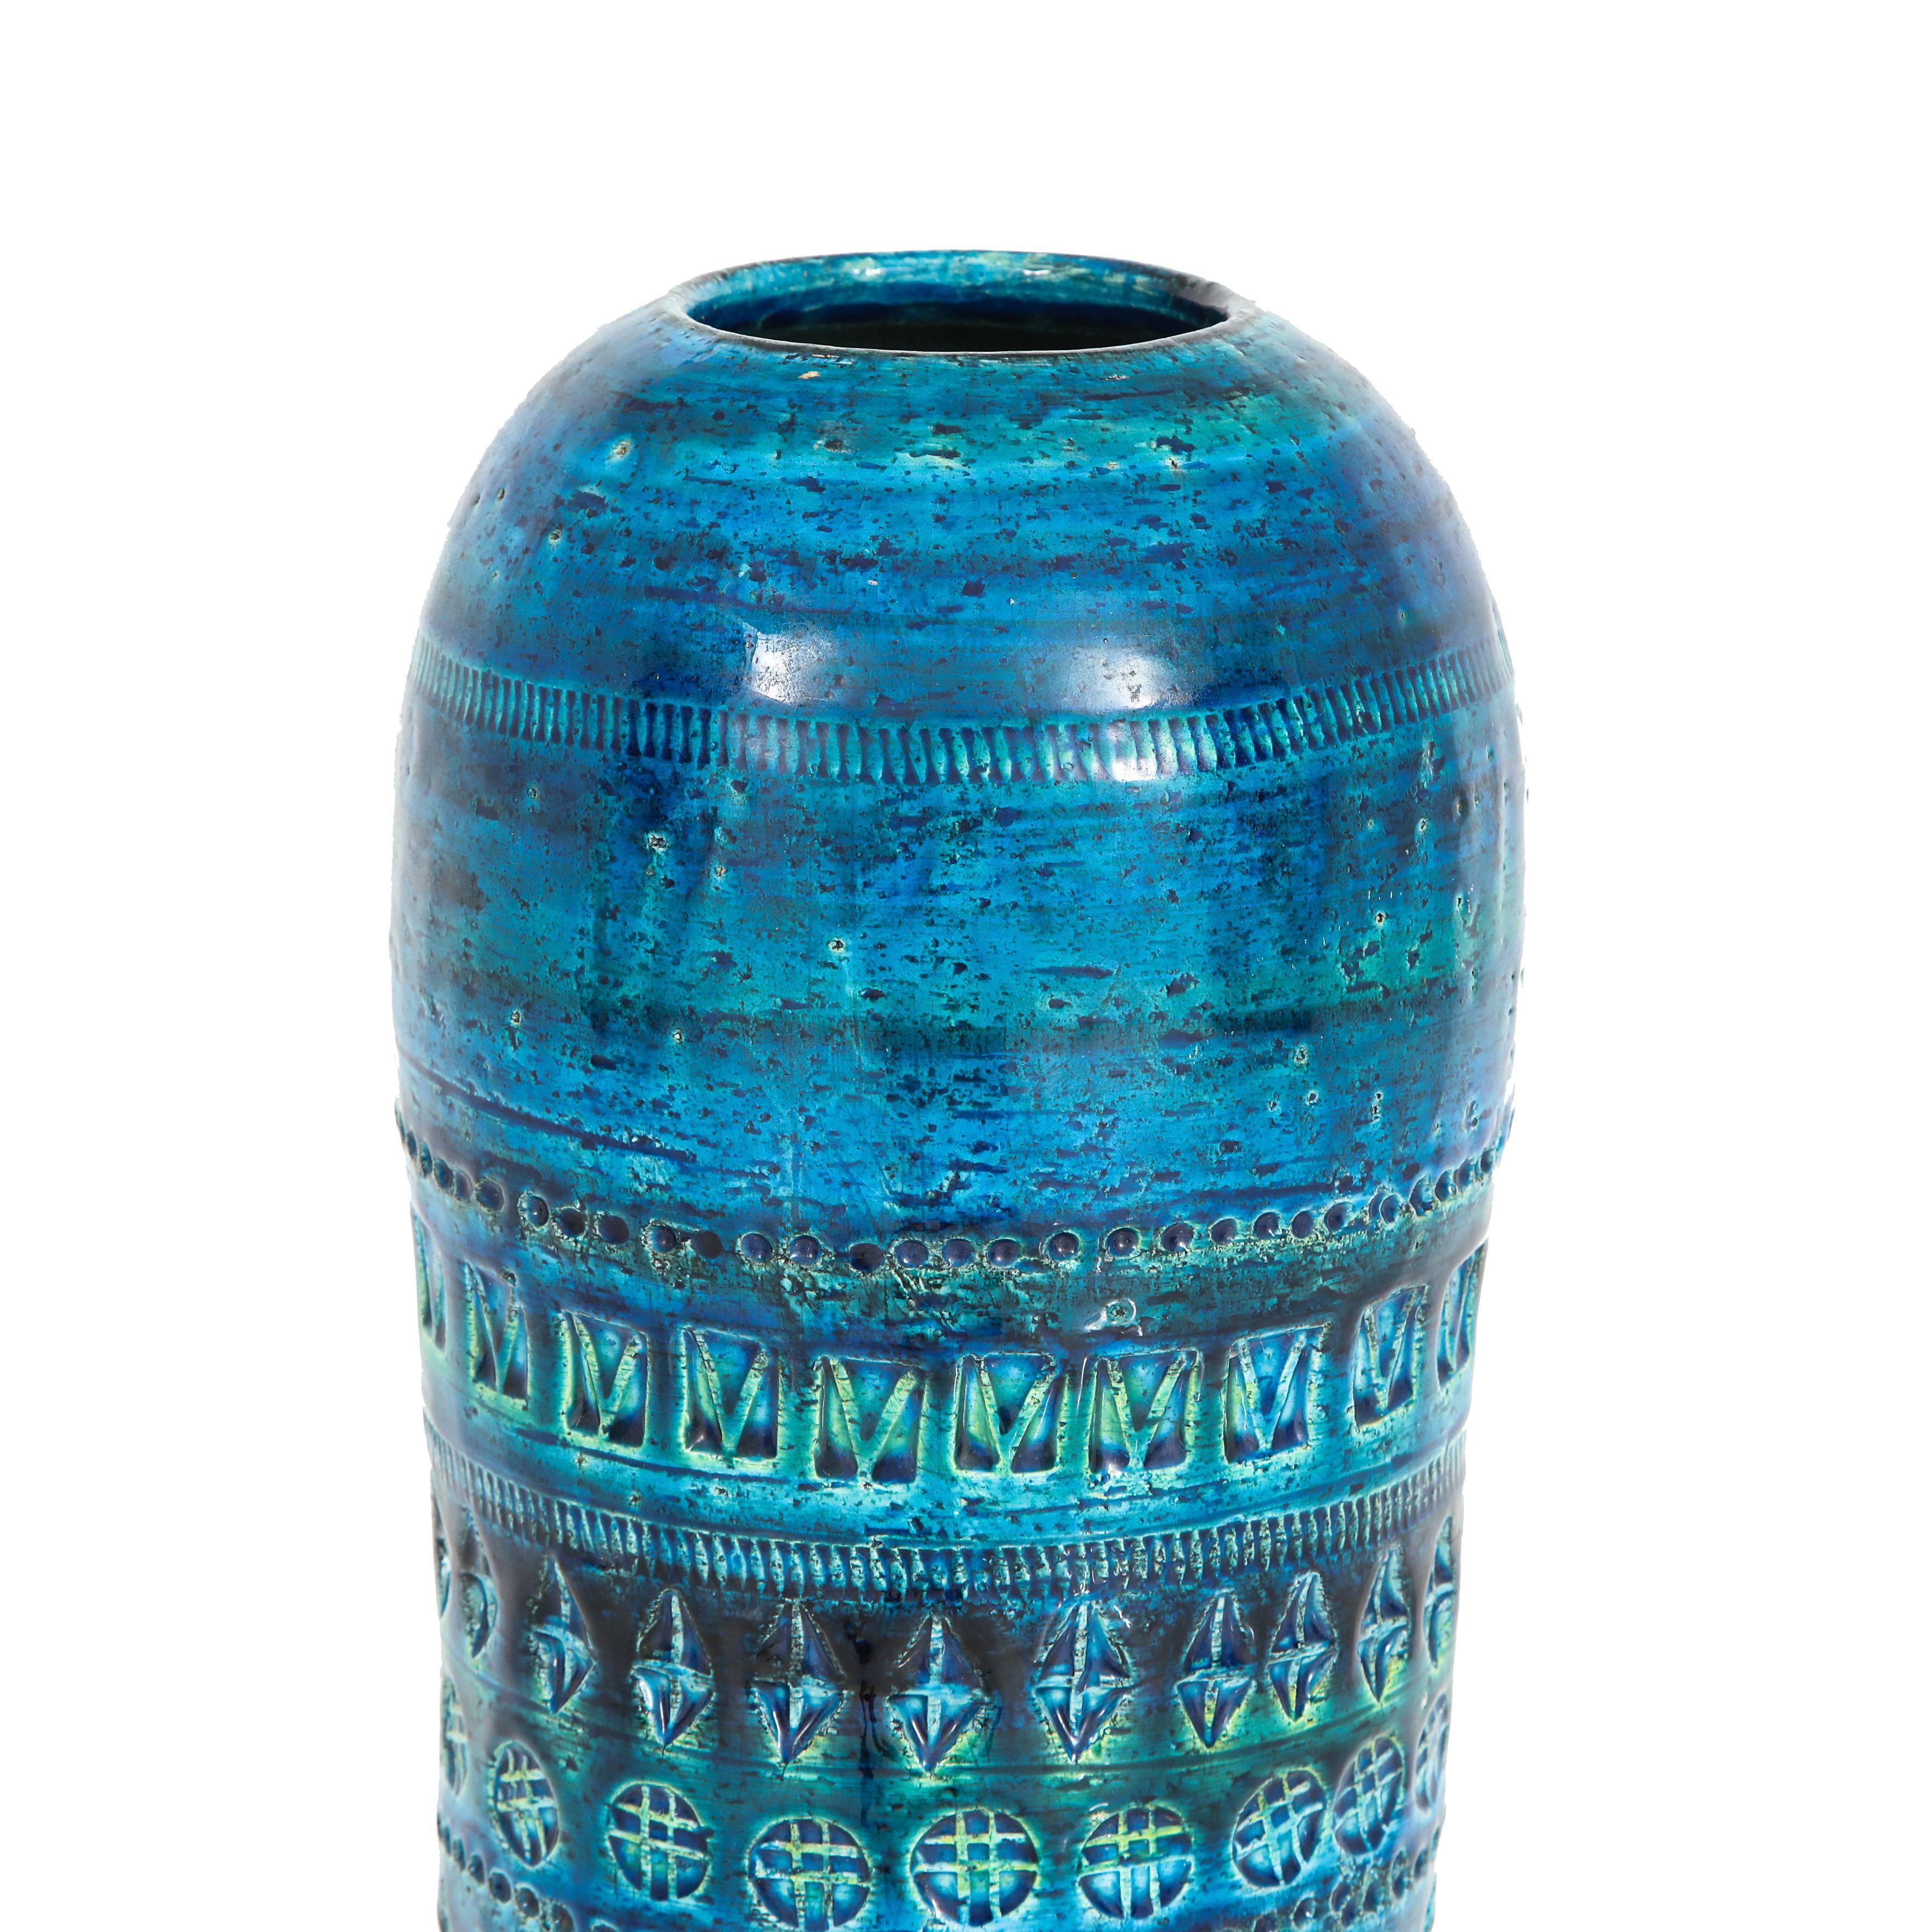 Glazed Aldo Londi Bitossi Ceramic Vase Rimini Blue Signed, Italy, 1960s